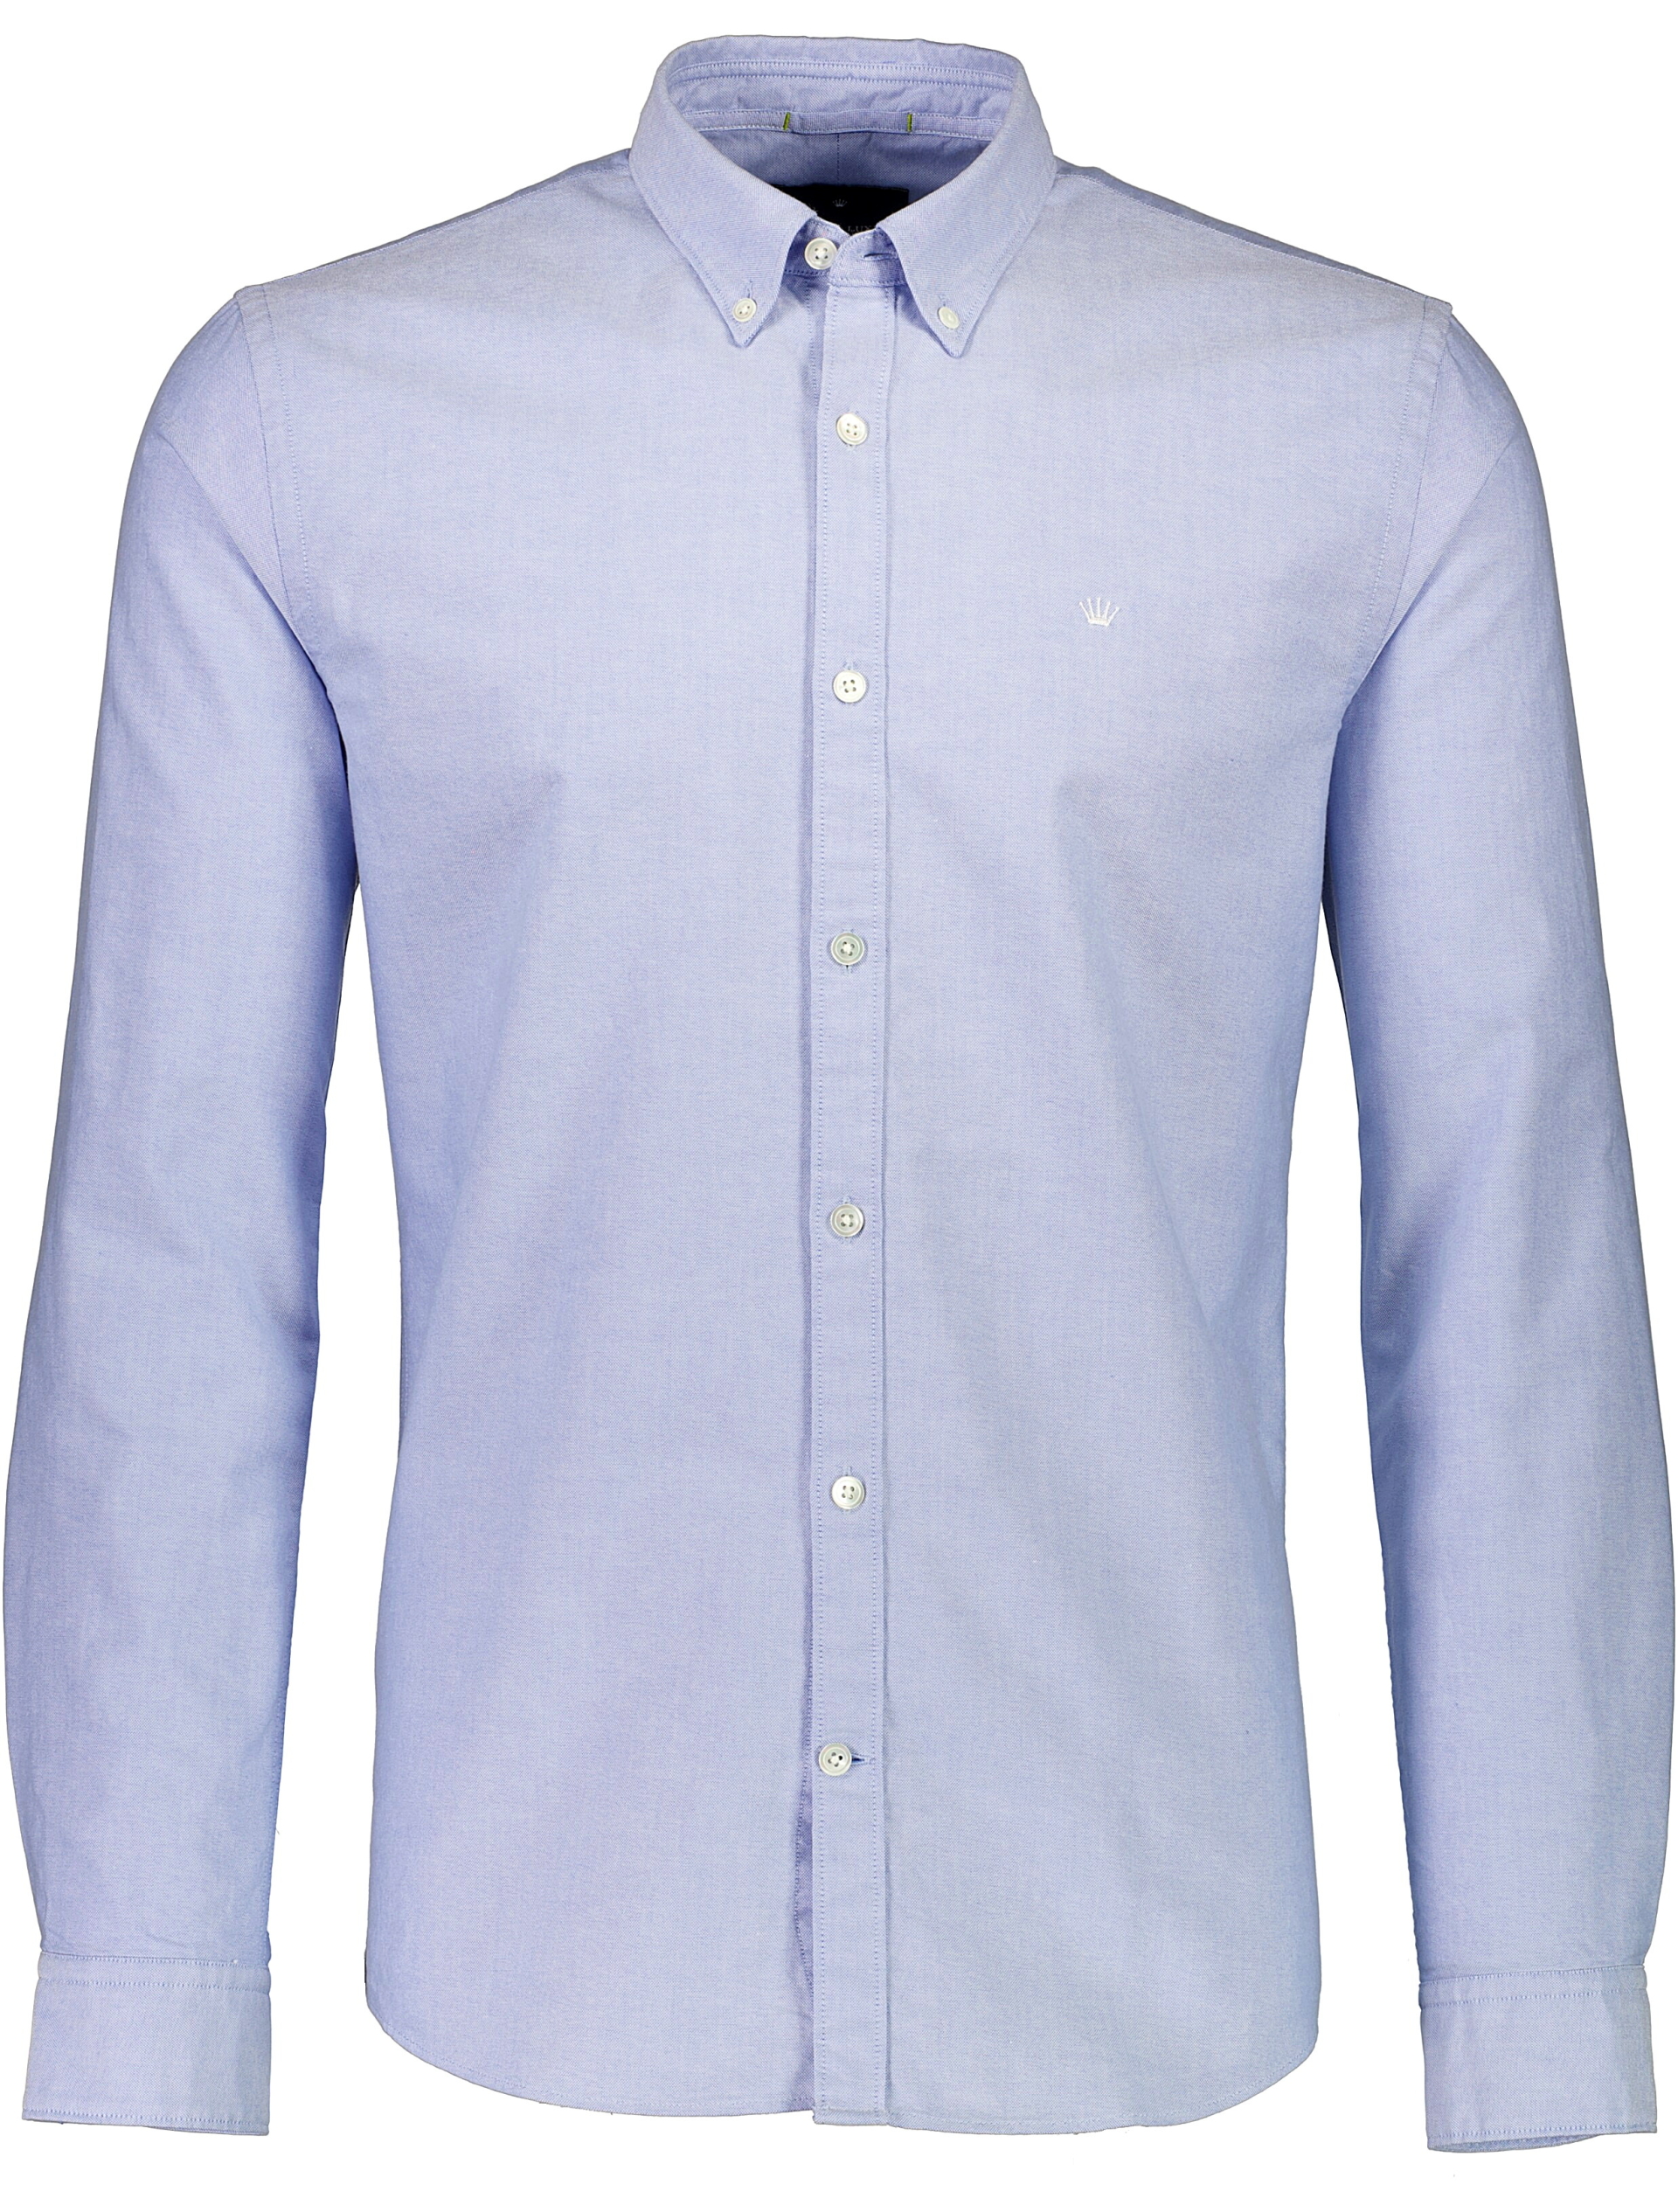 Junk de Luxe Oxford skjorte blå / light blue